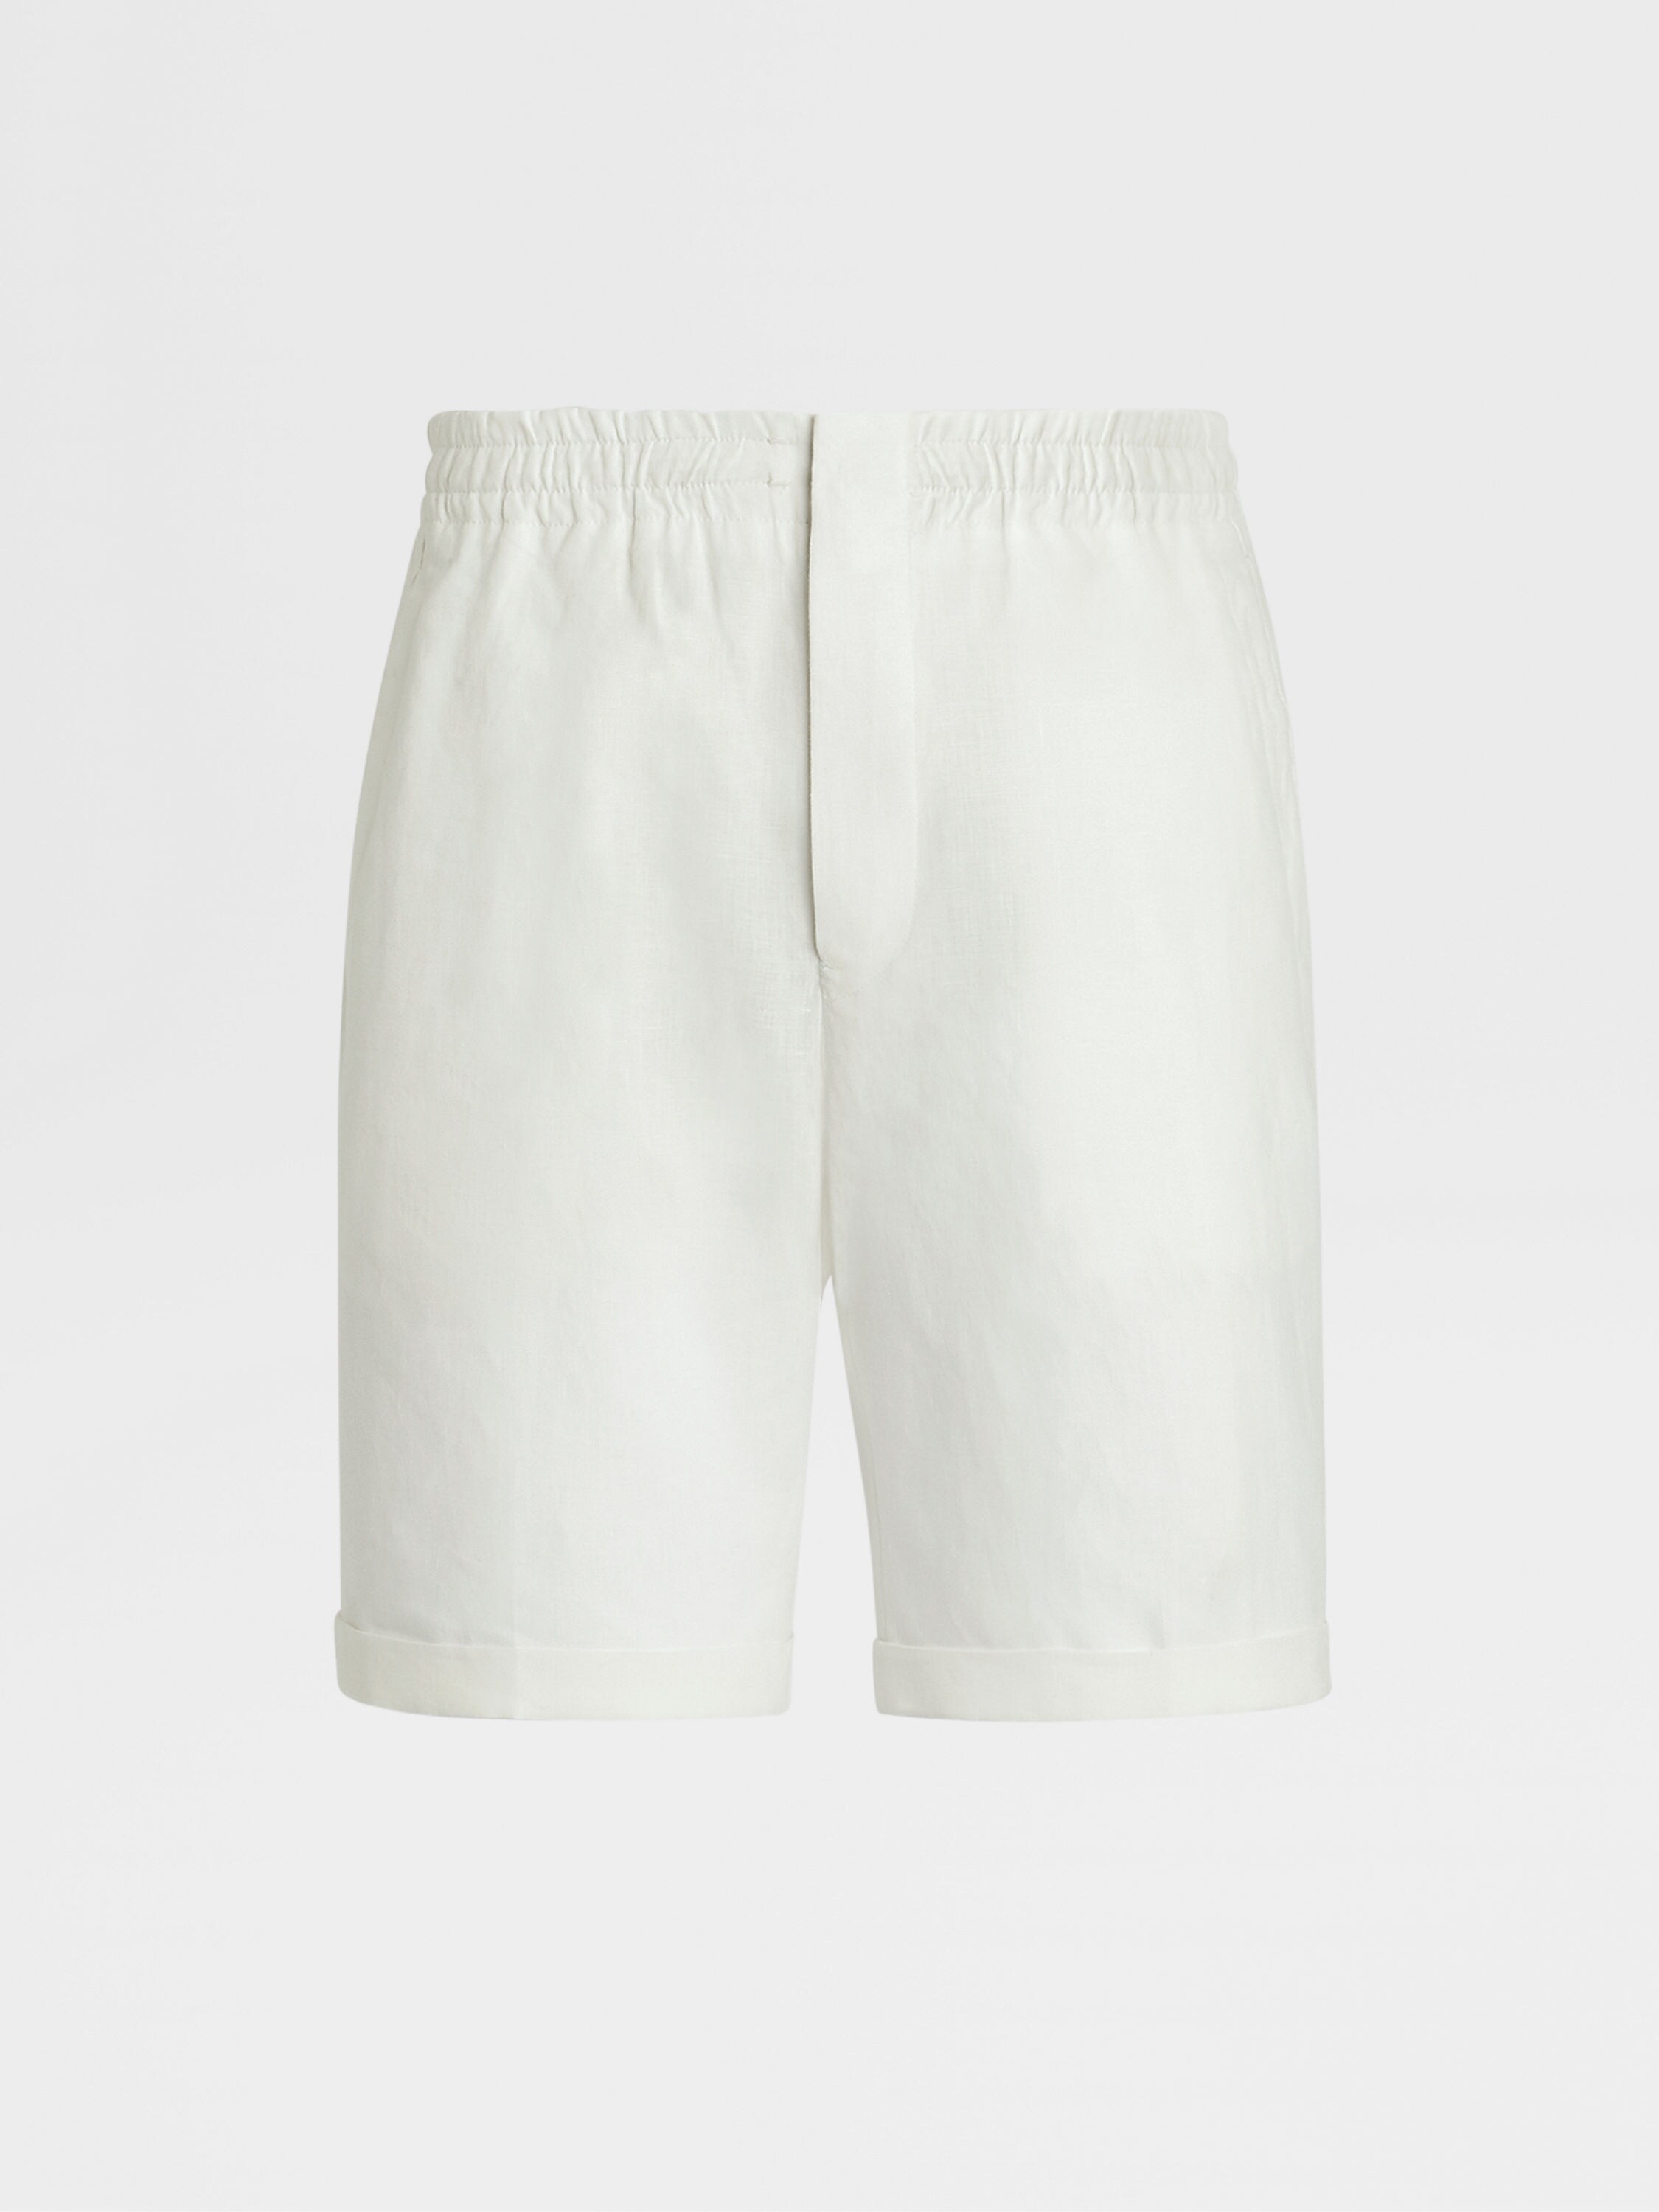 White Linen Shorts FW23 28015305 | Zegna ROW